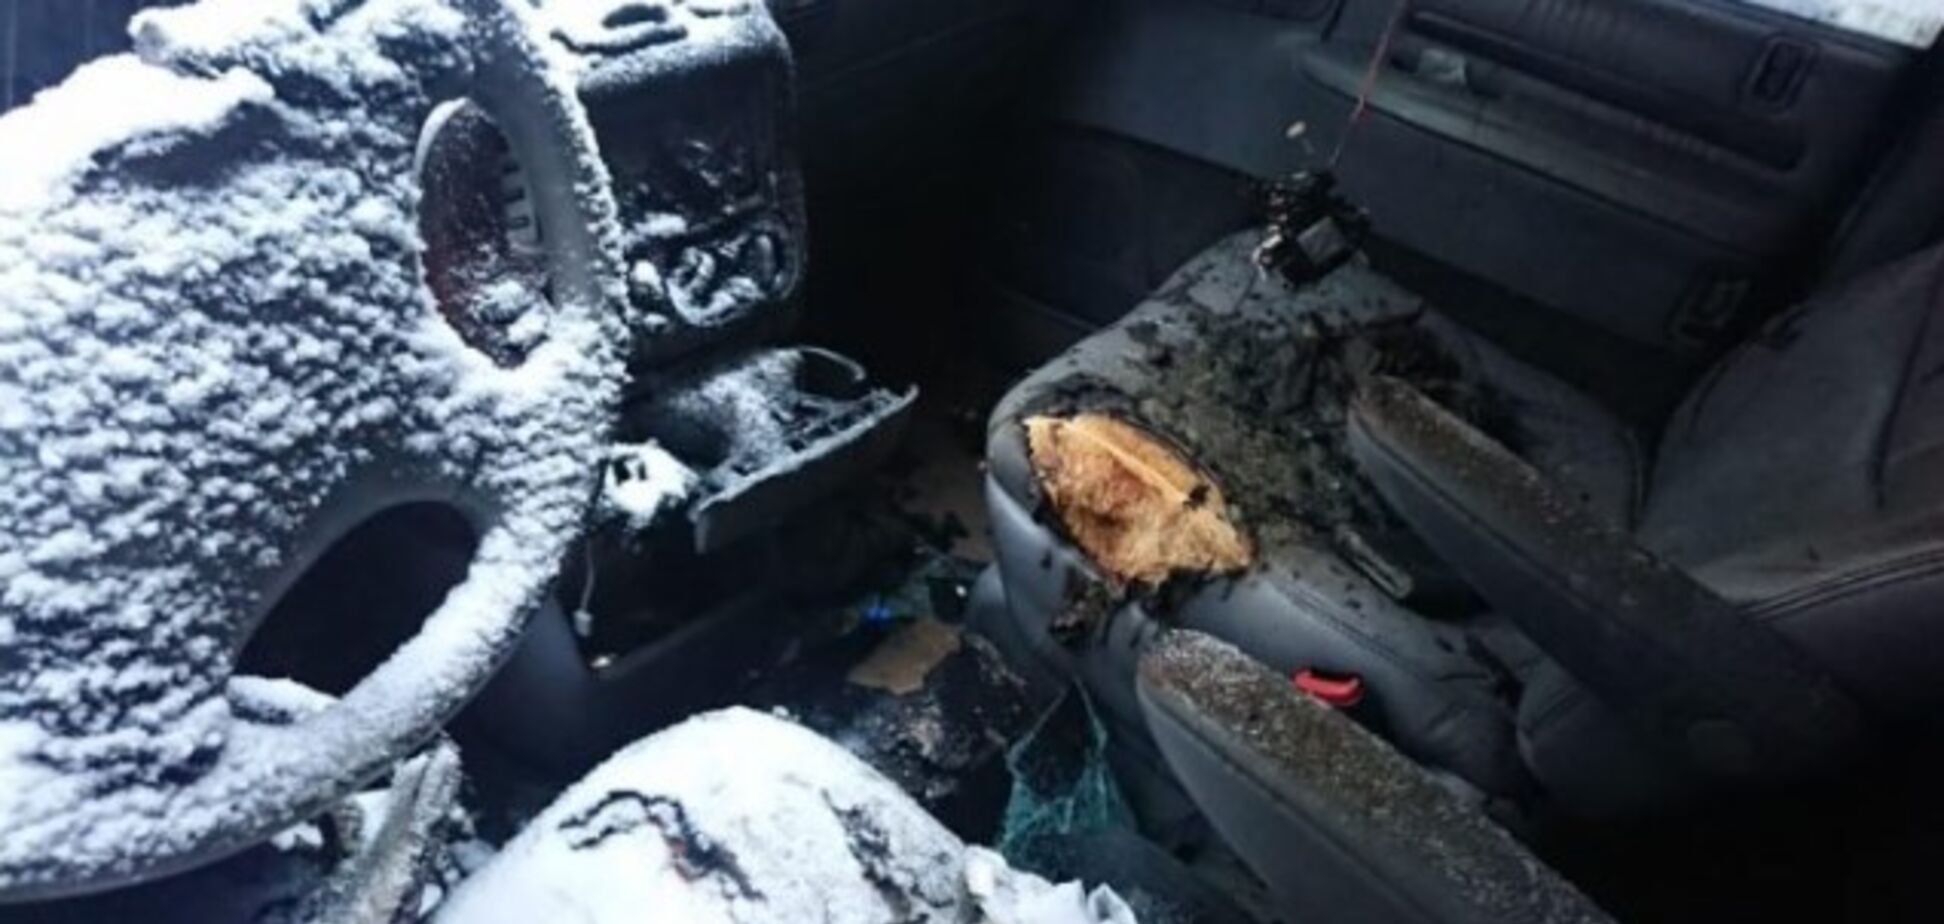 Боролся с песчаной мафией: в Киеве подожгли авто известного правозащитника. Фото